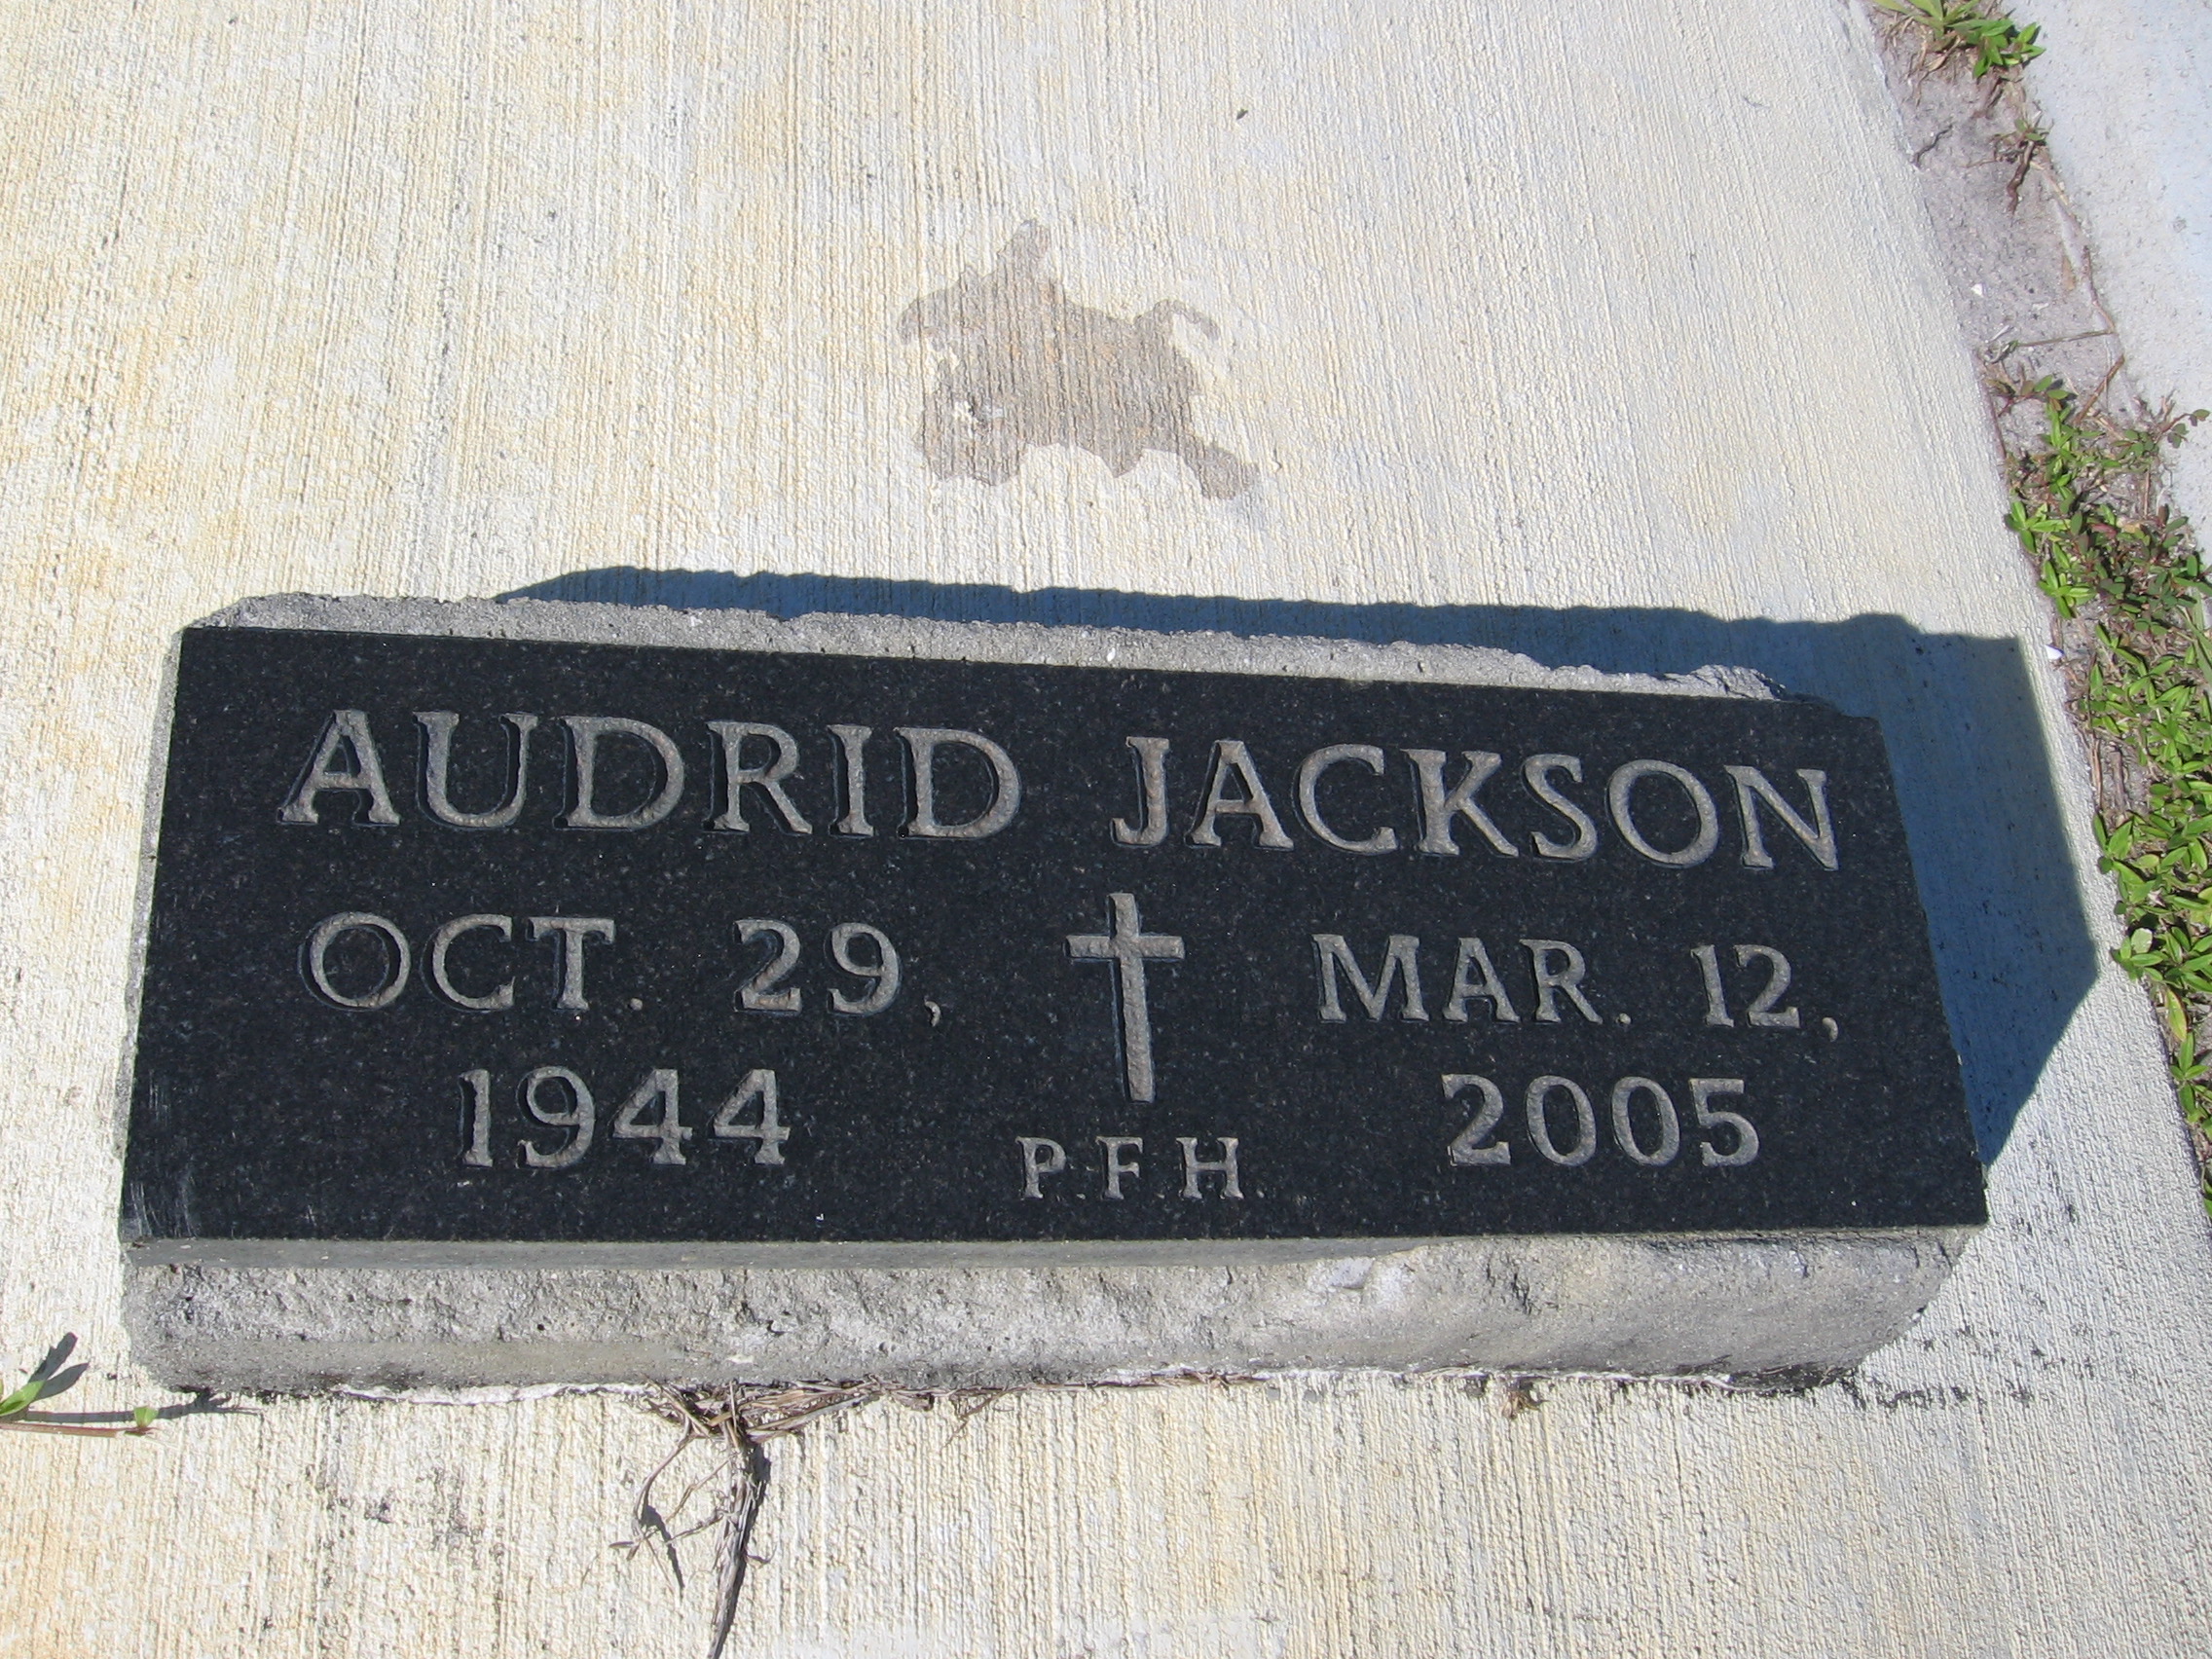 Audrid Jackson